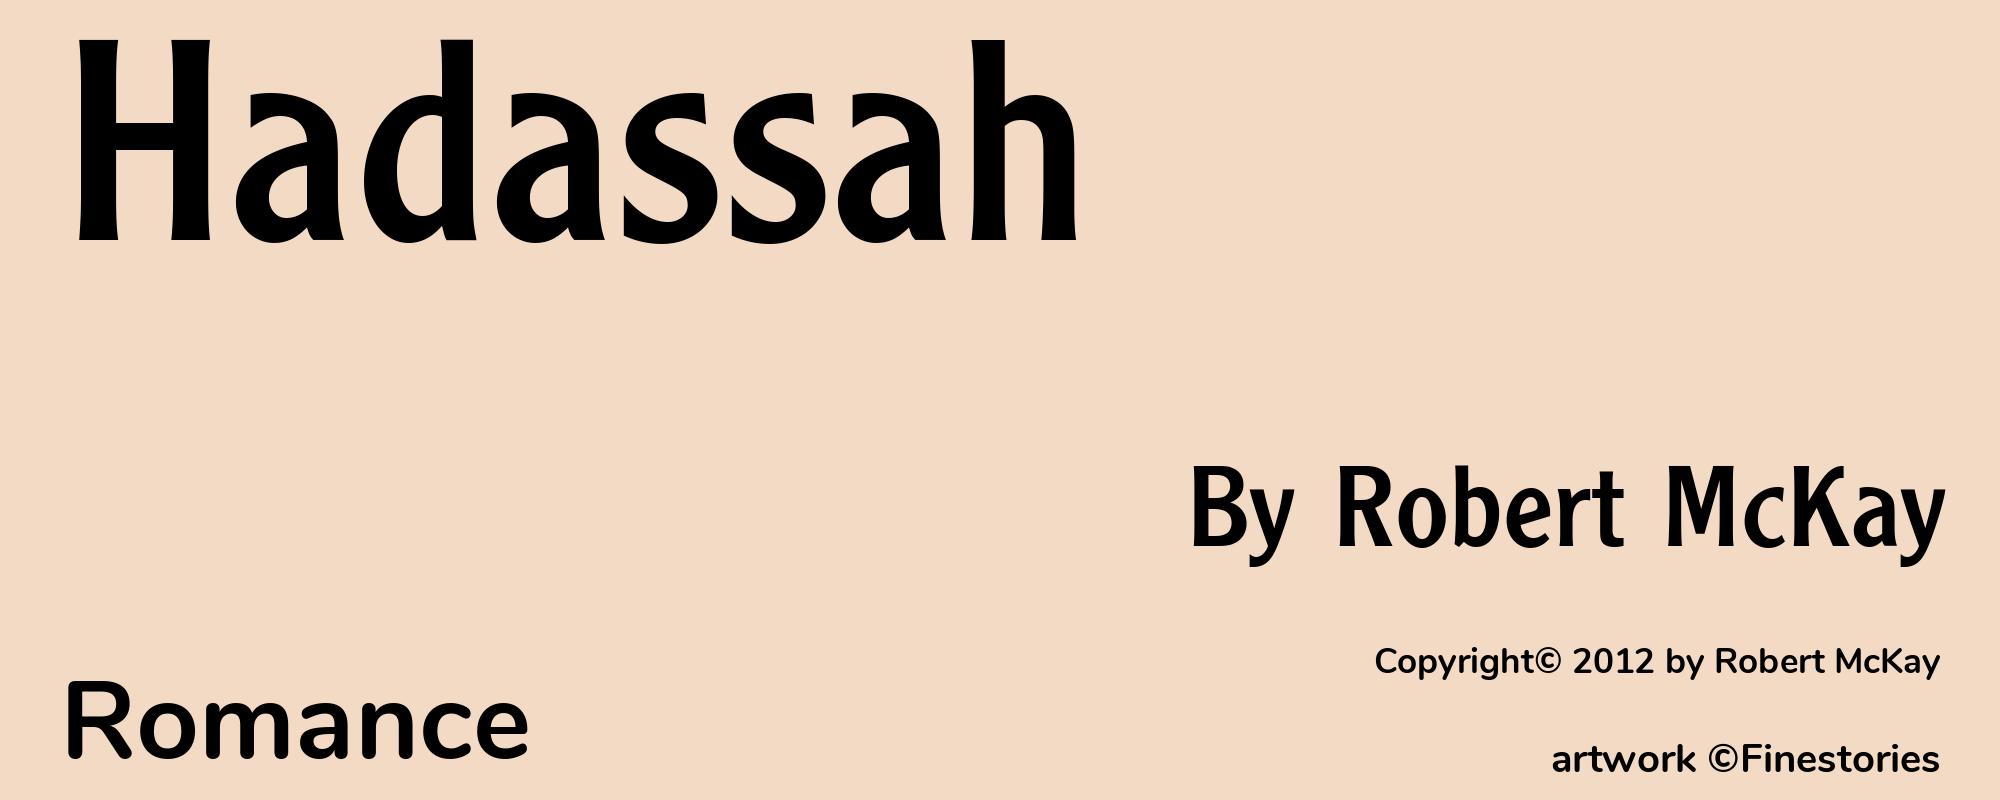 Hadassah - Cover